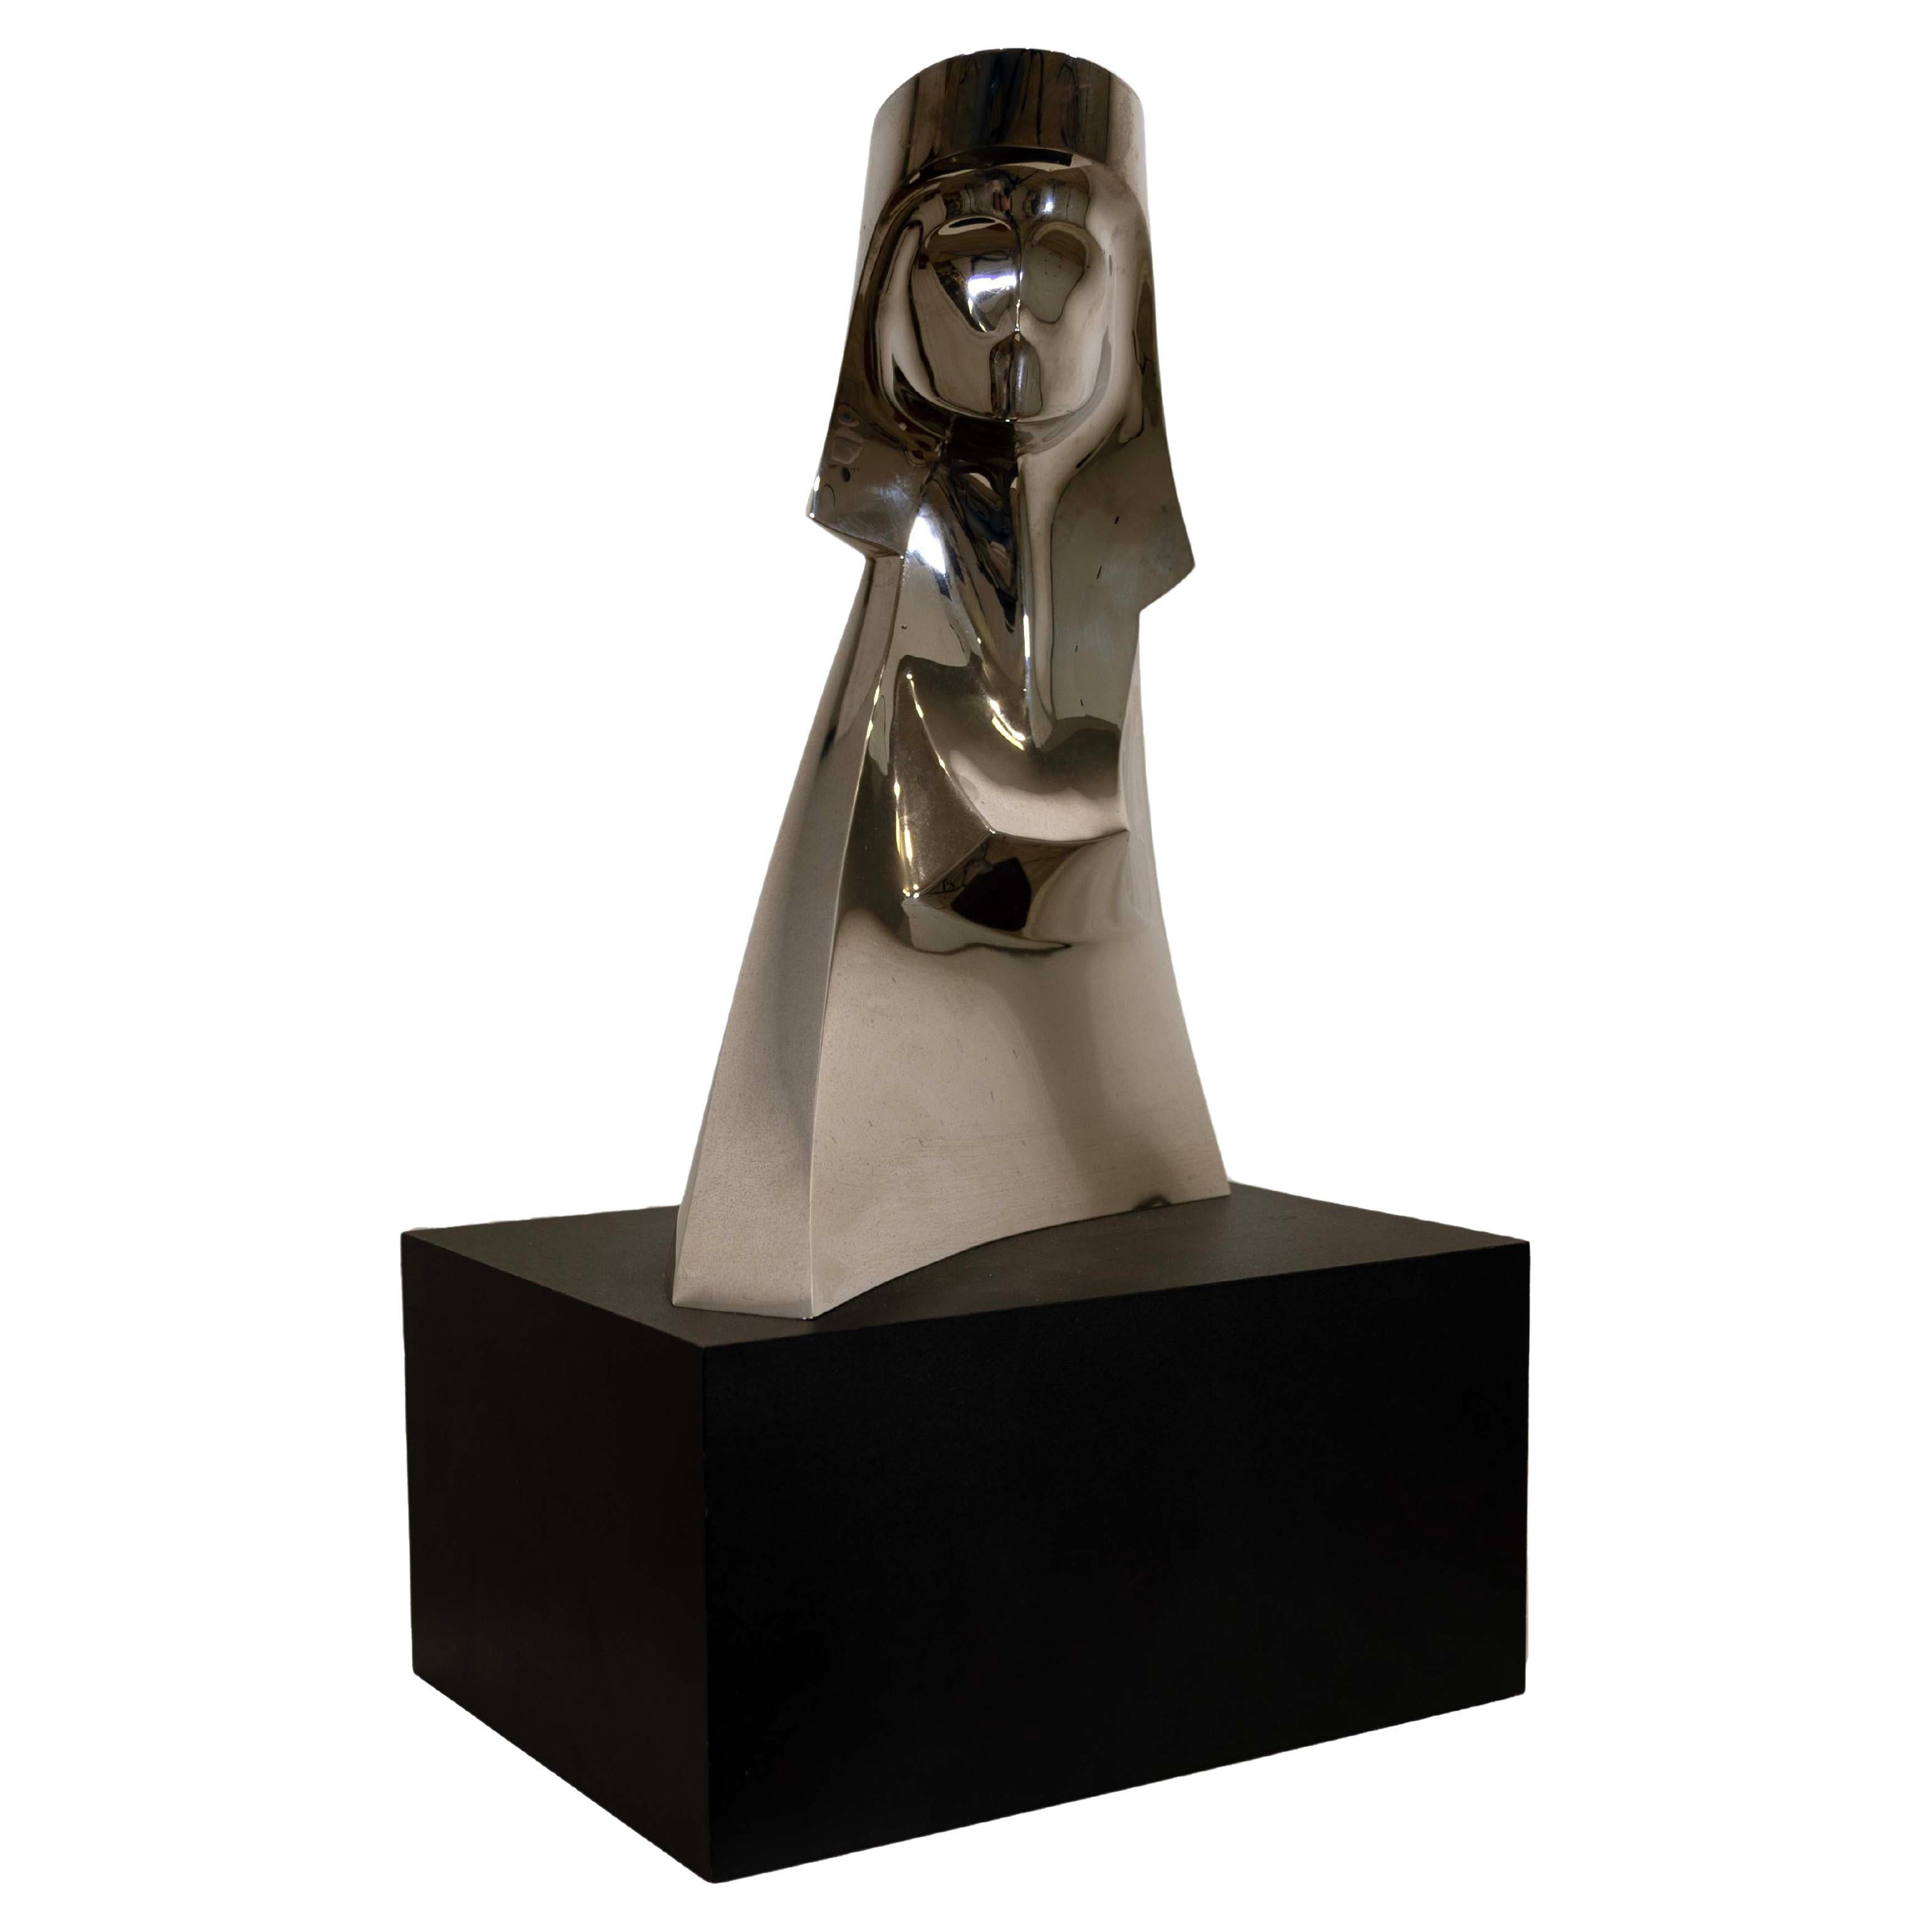 Gary Slater Aluminum Sphinx Sculpture Signed MSL Slater AP 1994 For Sale